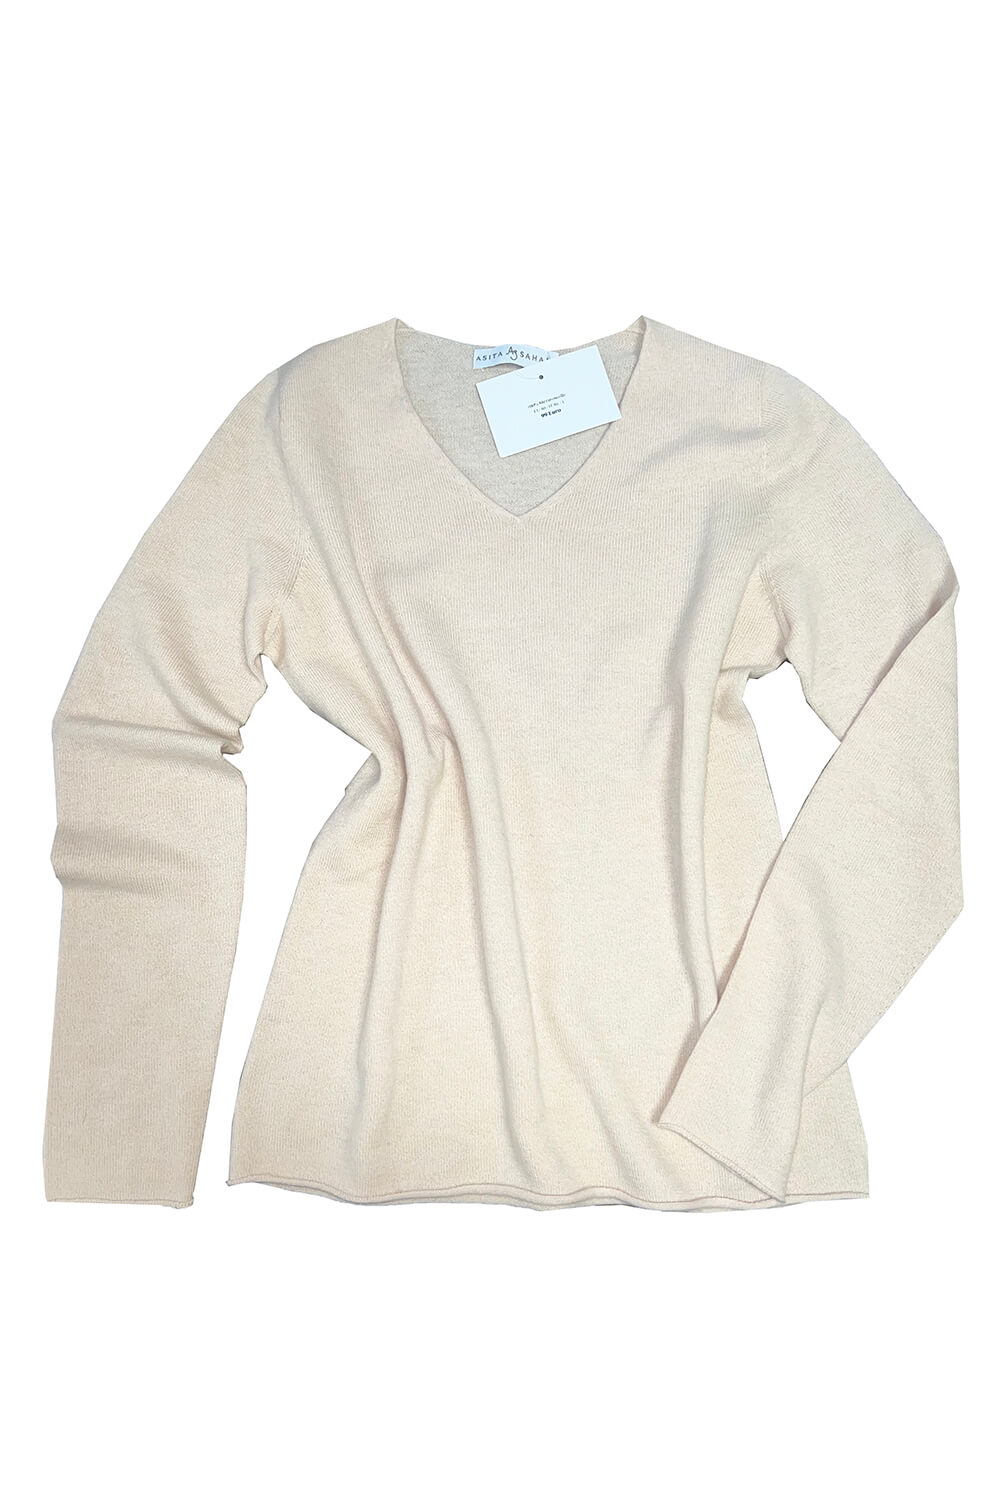 light beige 100% merino sweater with V-neck | off-white v-neck sweater